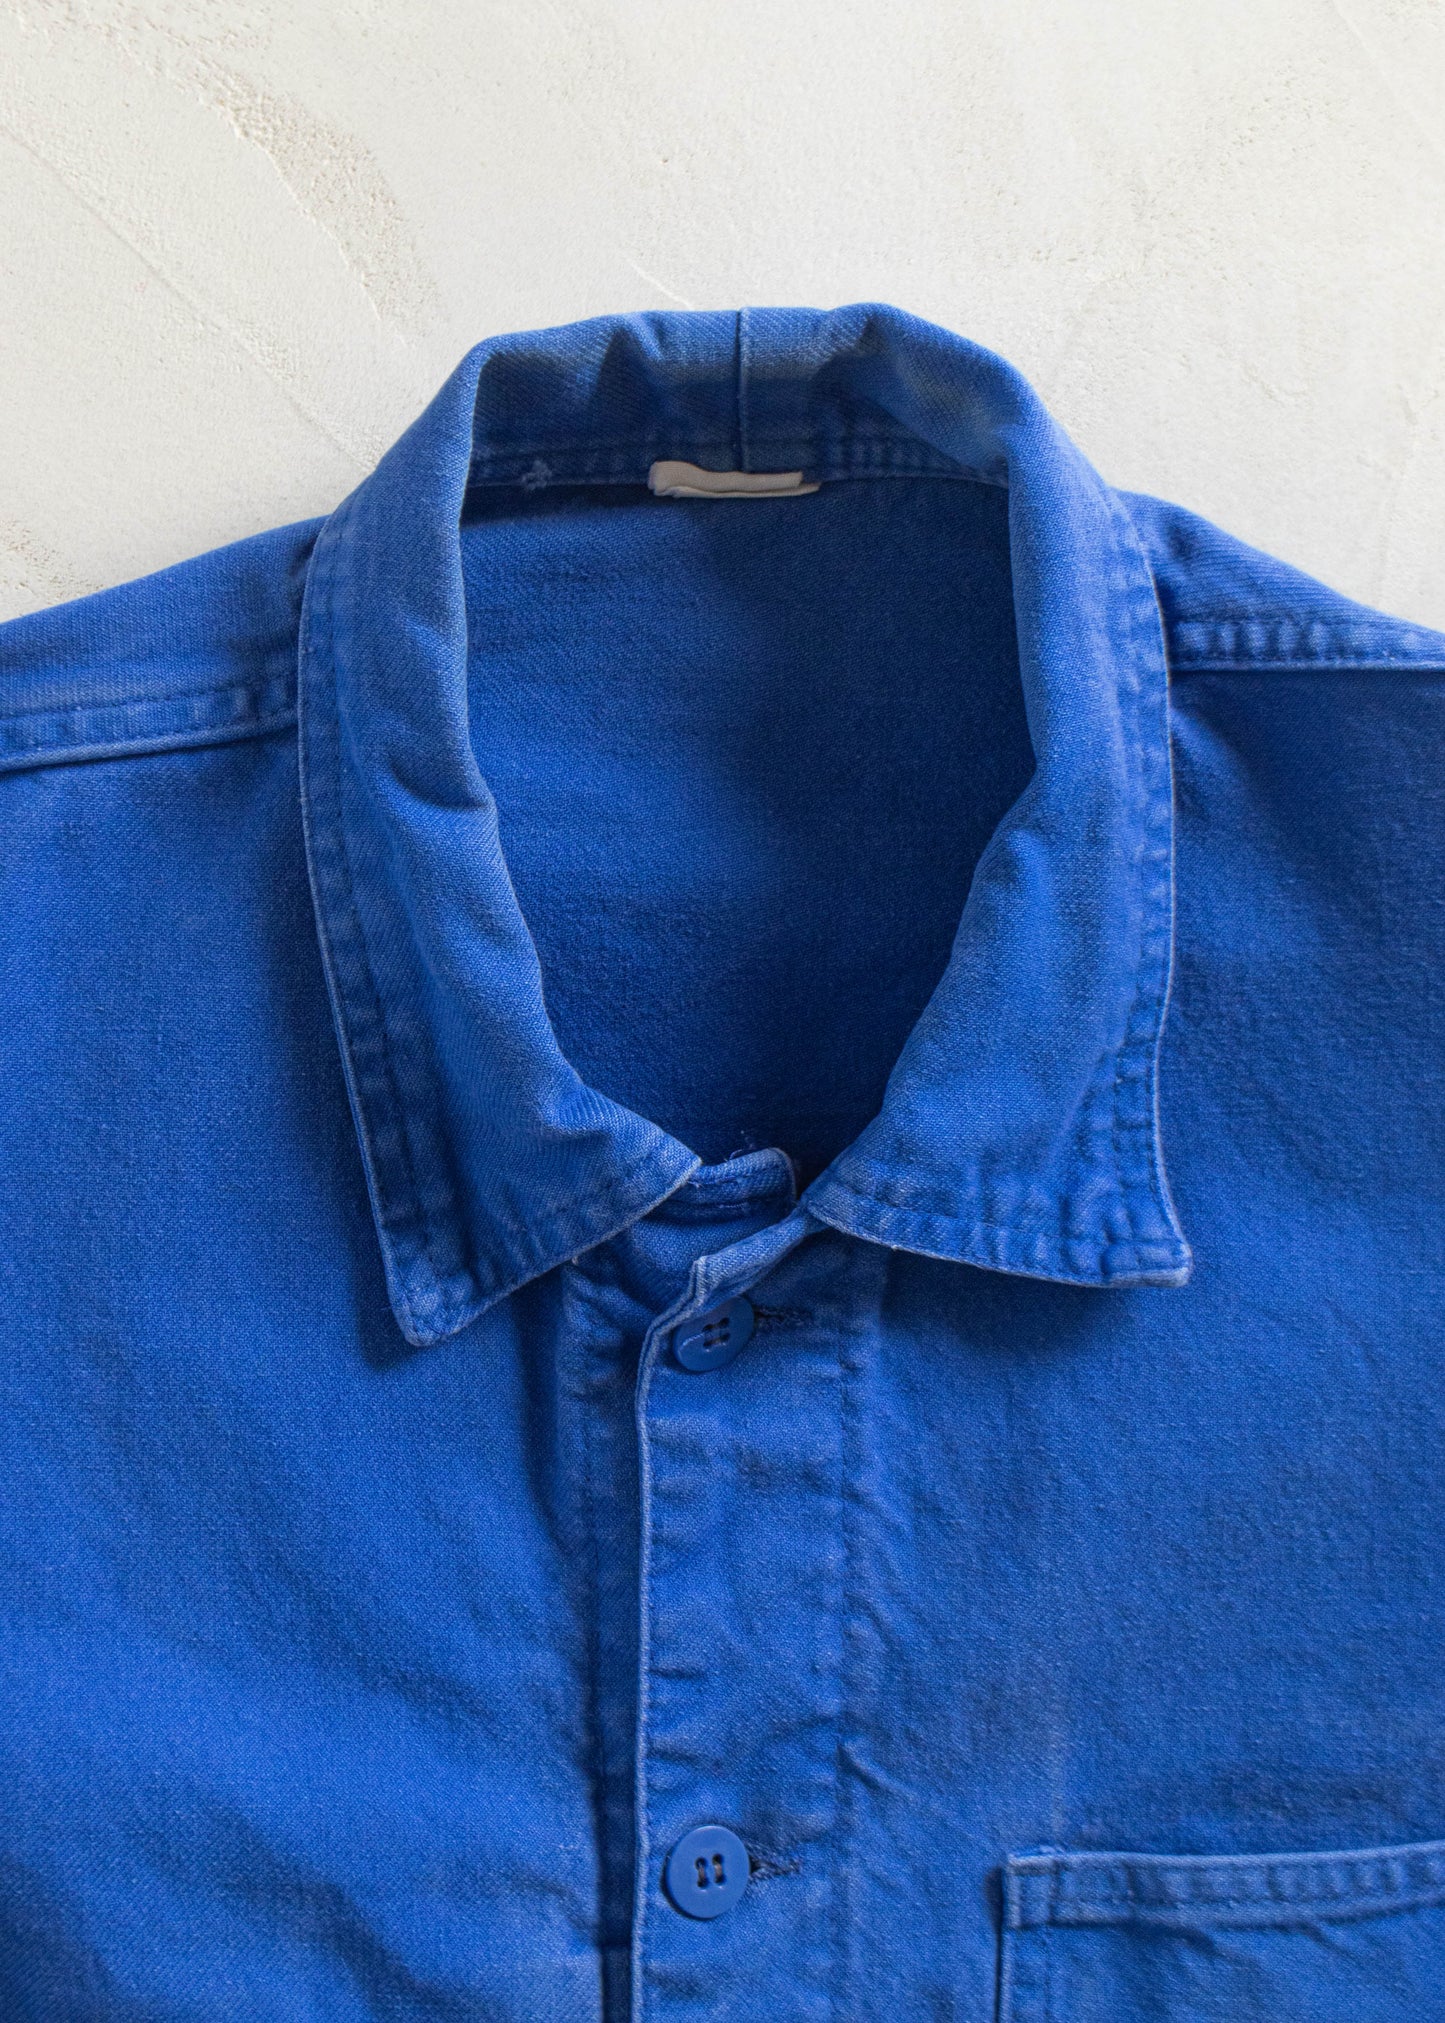 Vintage 1980s Bleu de Travail Workwear Chore Jacket Size XS/S